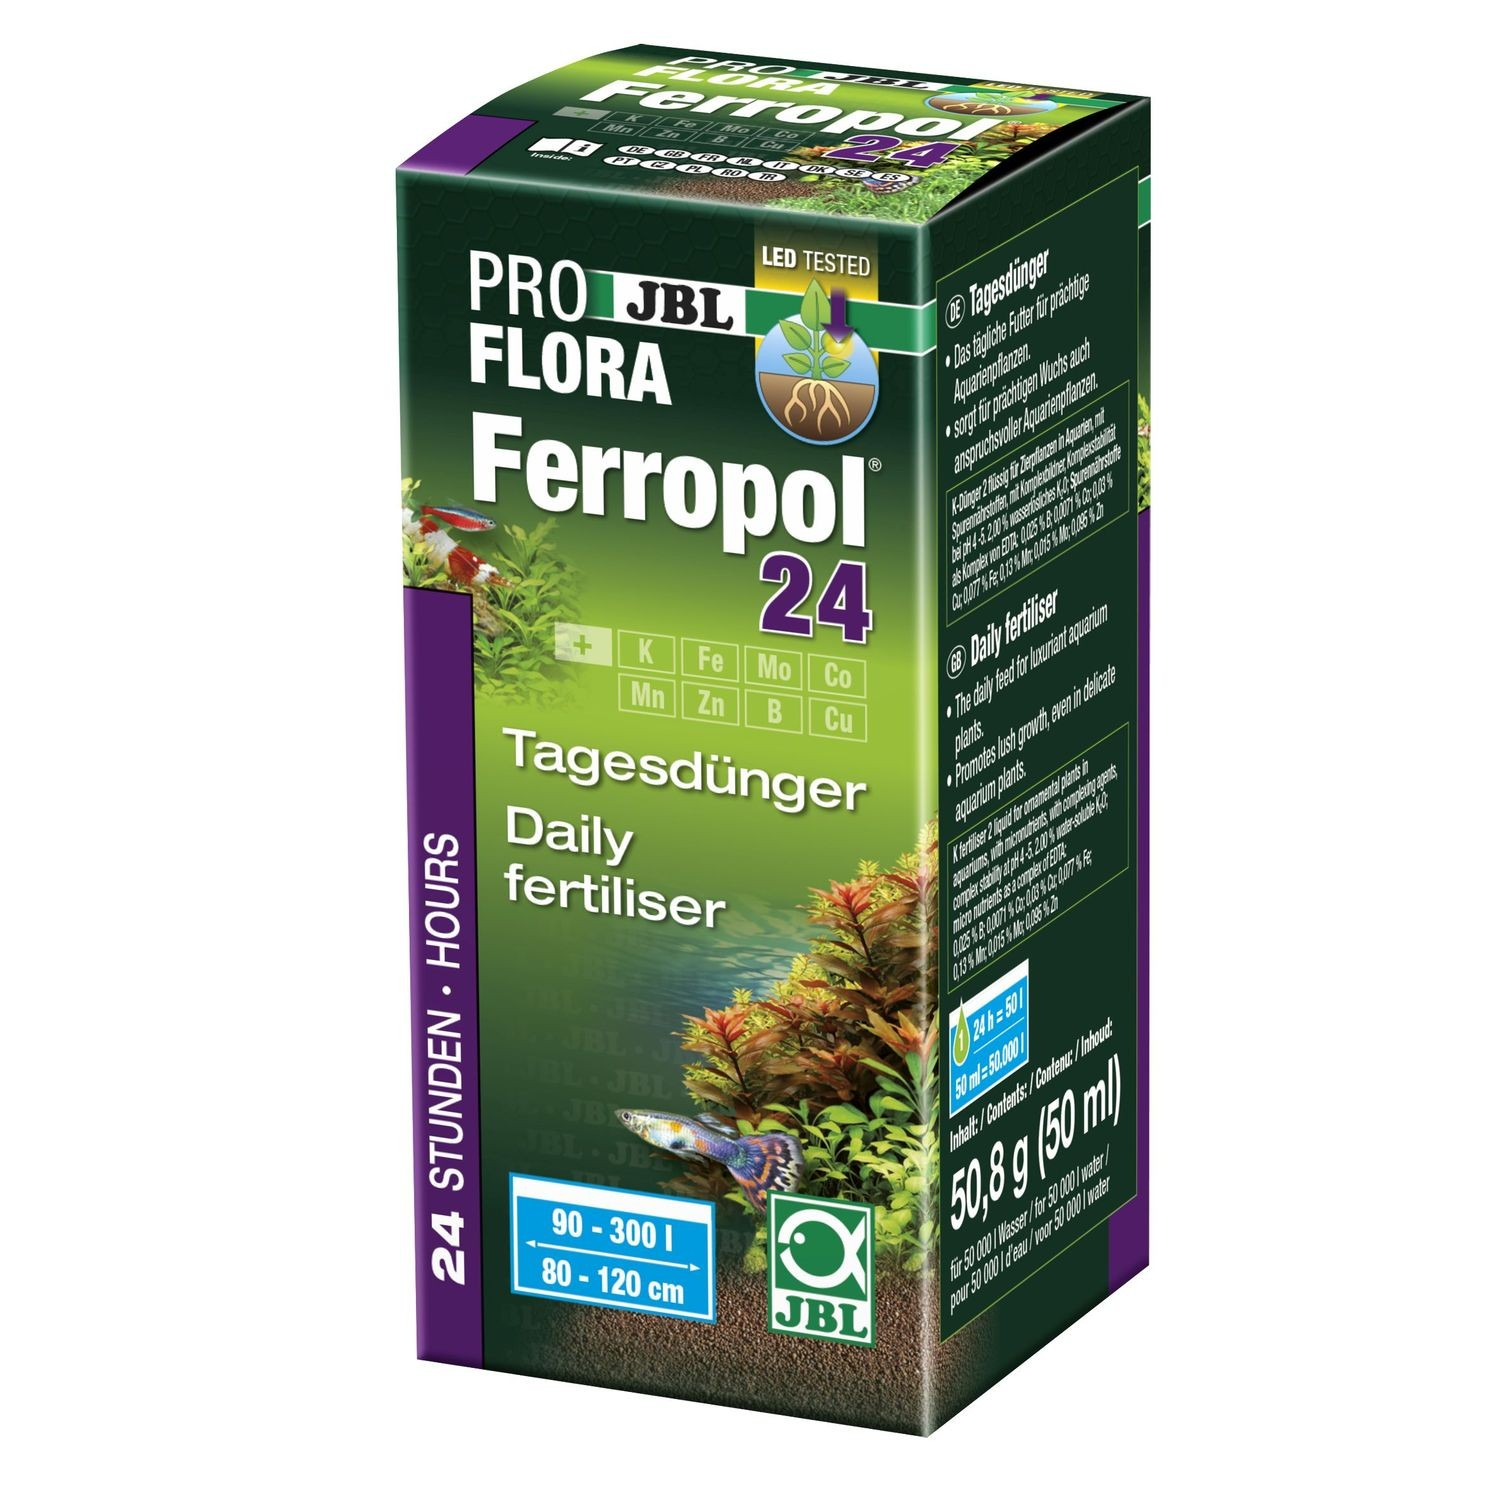 JBL Ferropol 24 Engrais journalier pour plantes d'aquarium